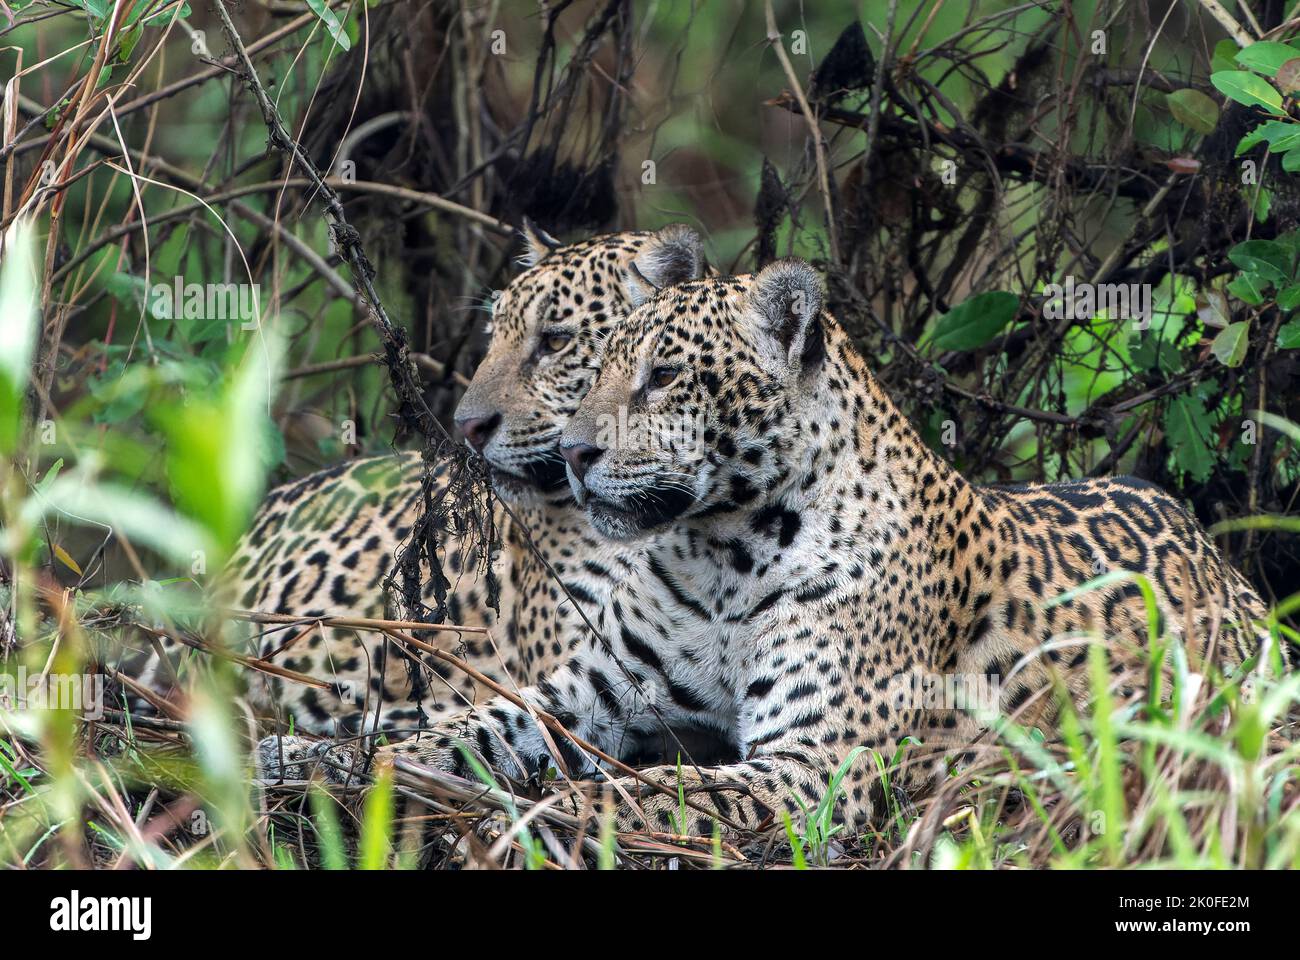 Jaguar, Panthera onca, due individui che giacciono nella vegetazione lungo il fiume, Pantanal, Brasile Foto Stock